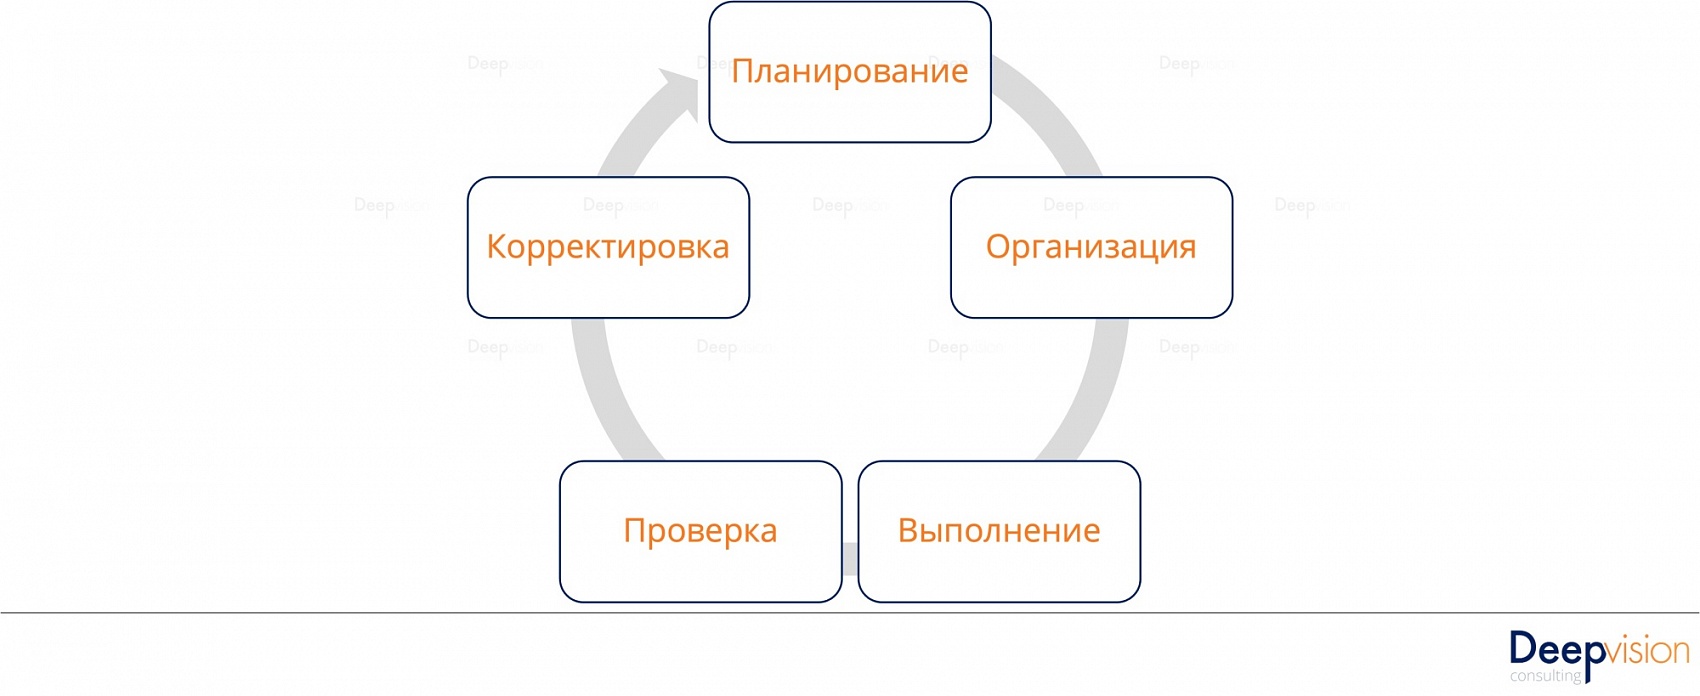 Основы бизнес-процессов - тезисы вебинара Цикл управления.jpg